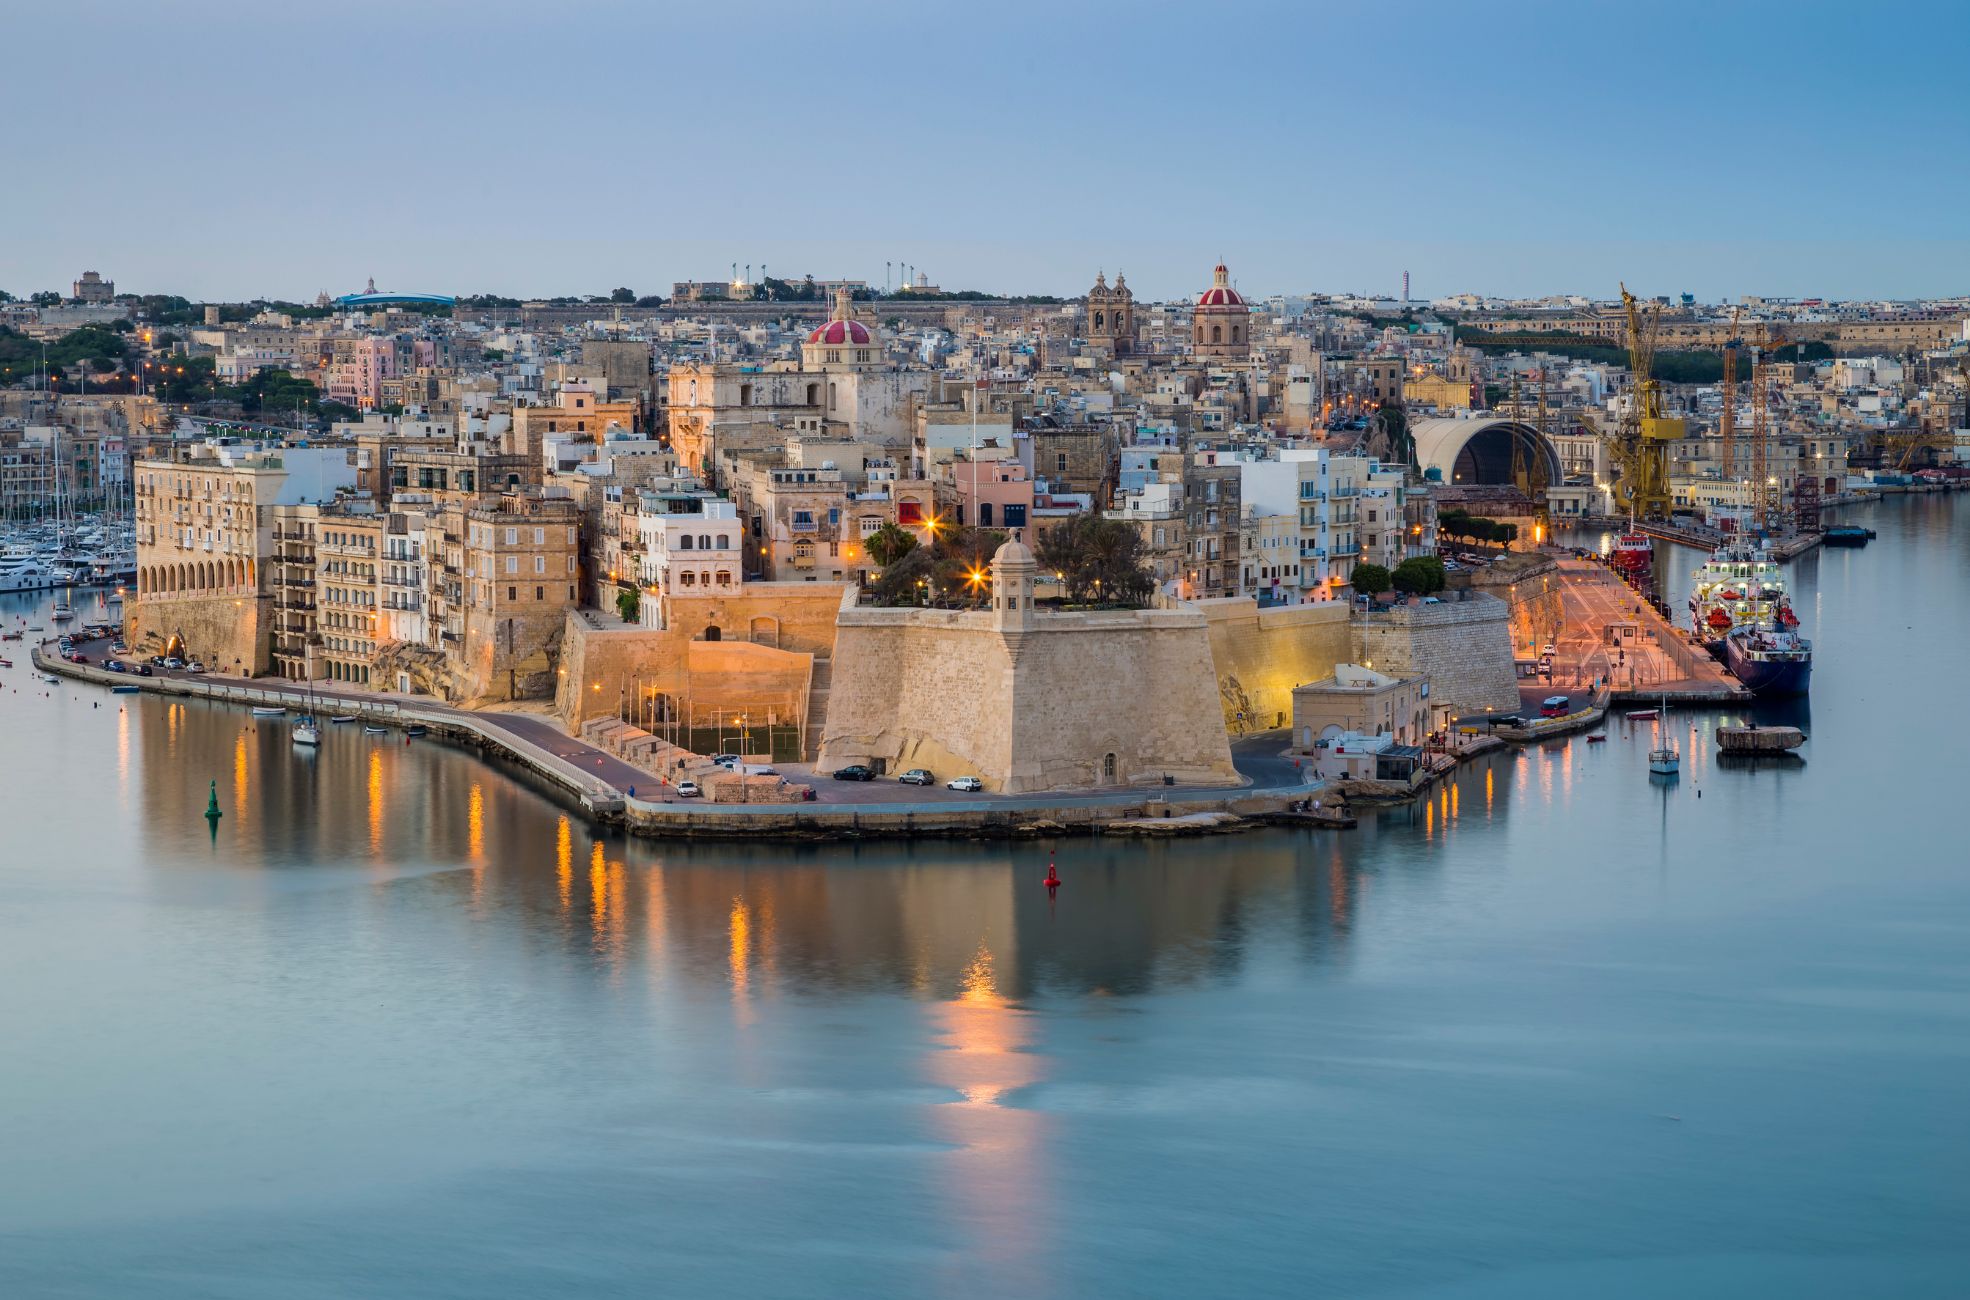 Buildings In Malta Next To Waterway